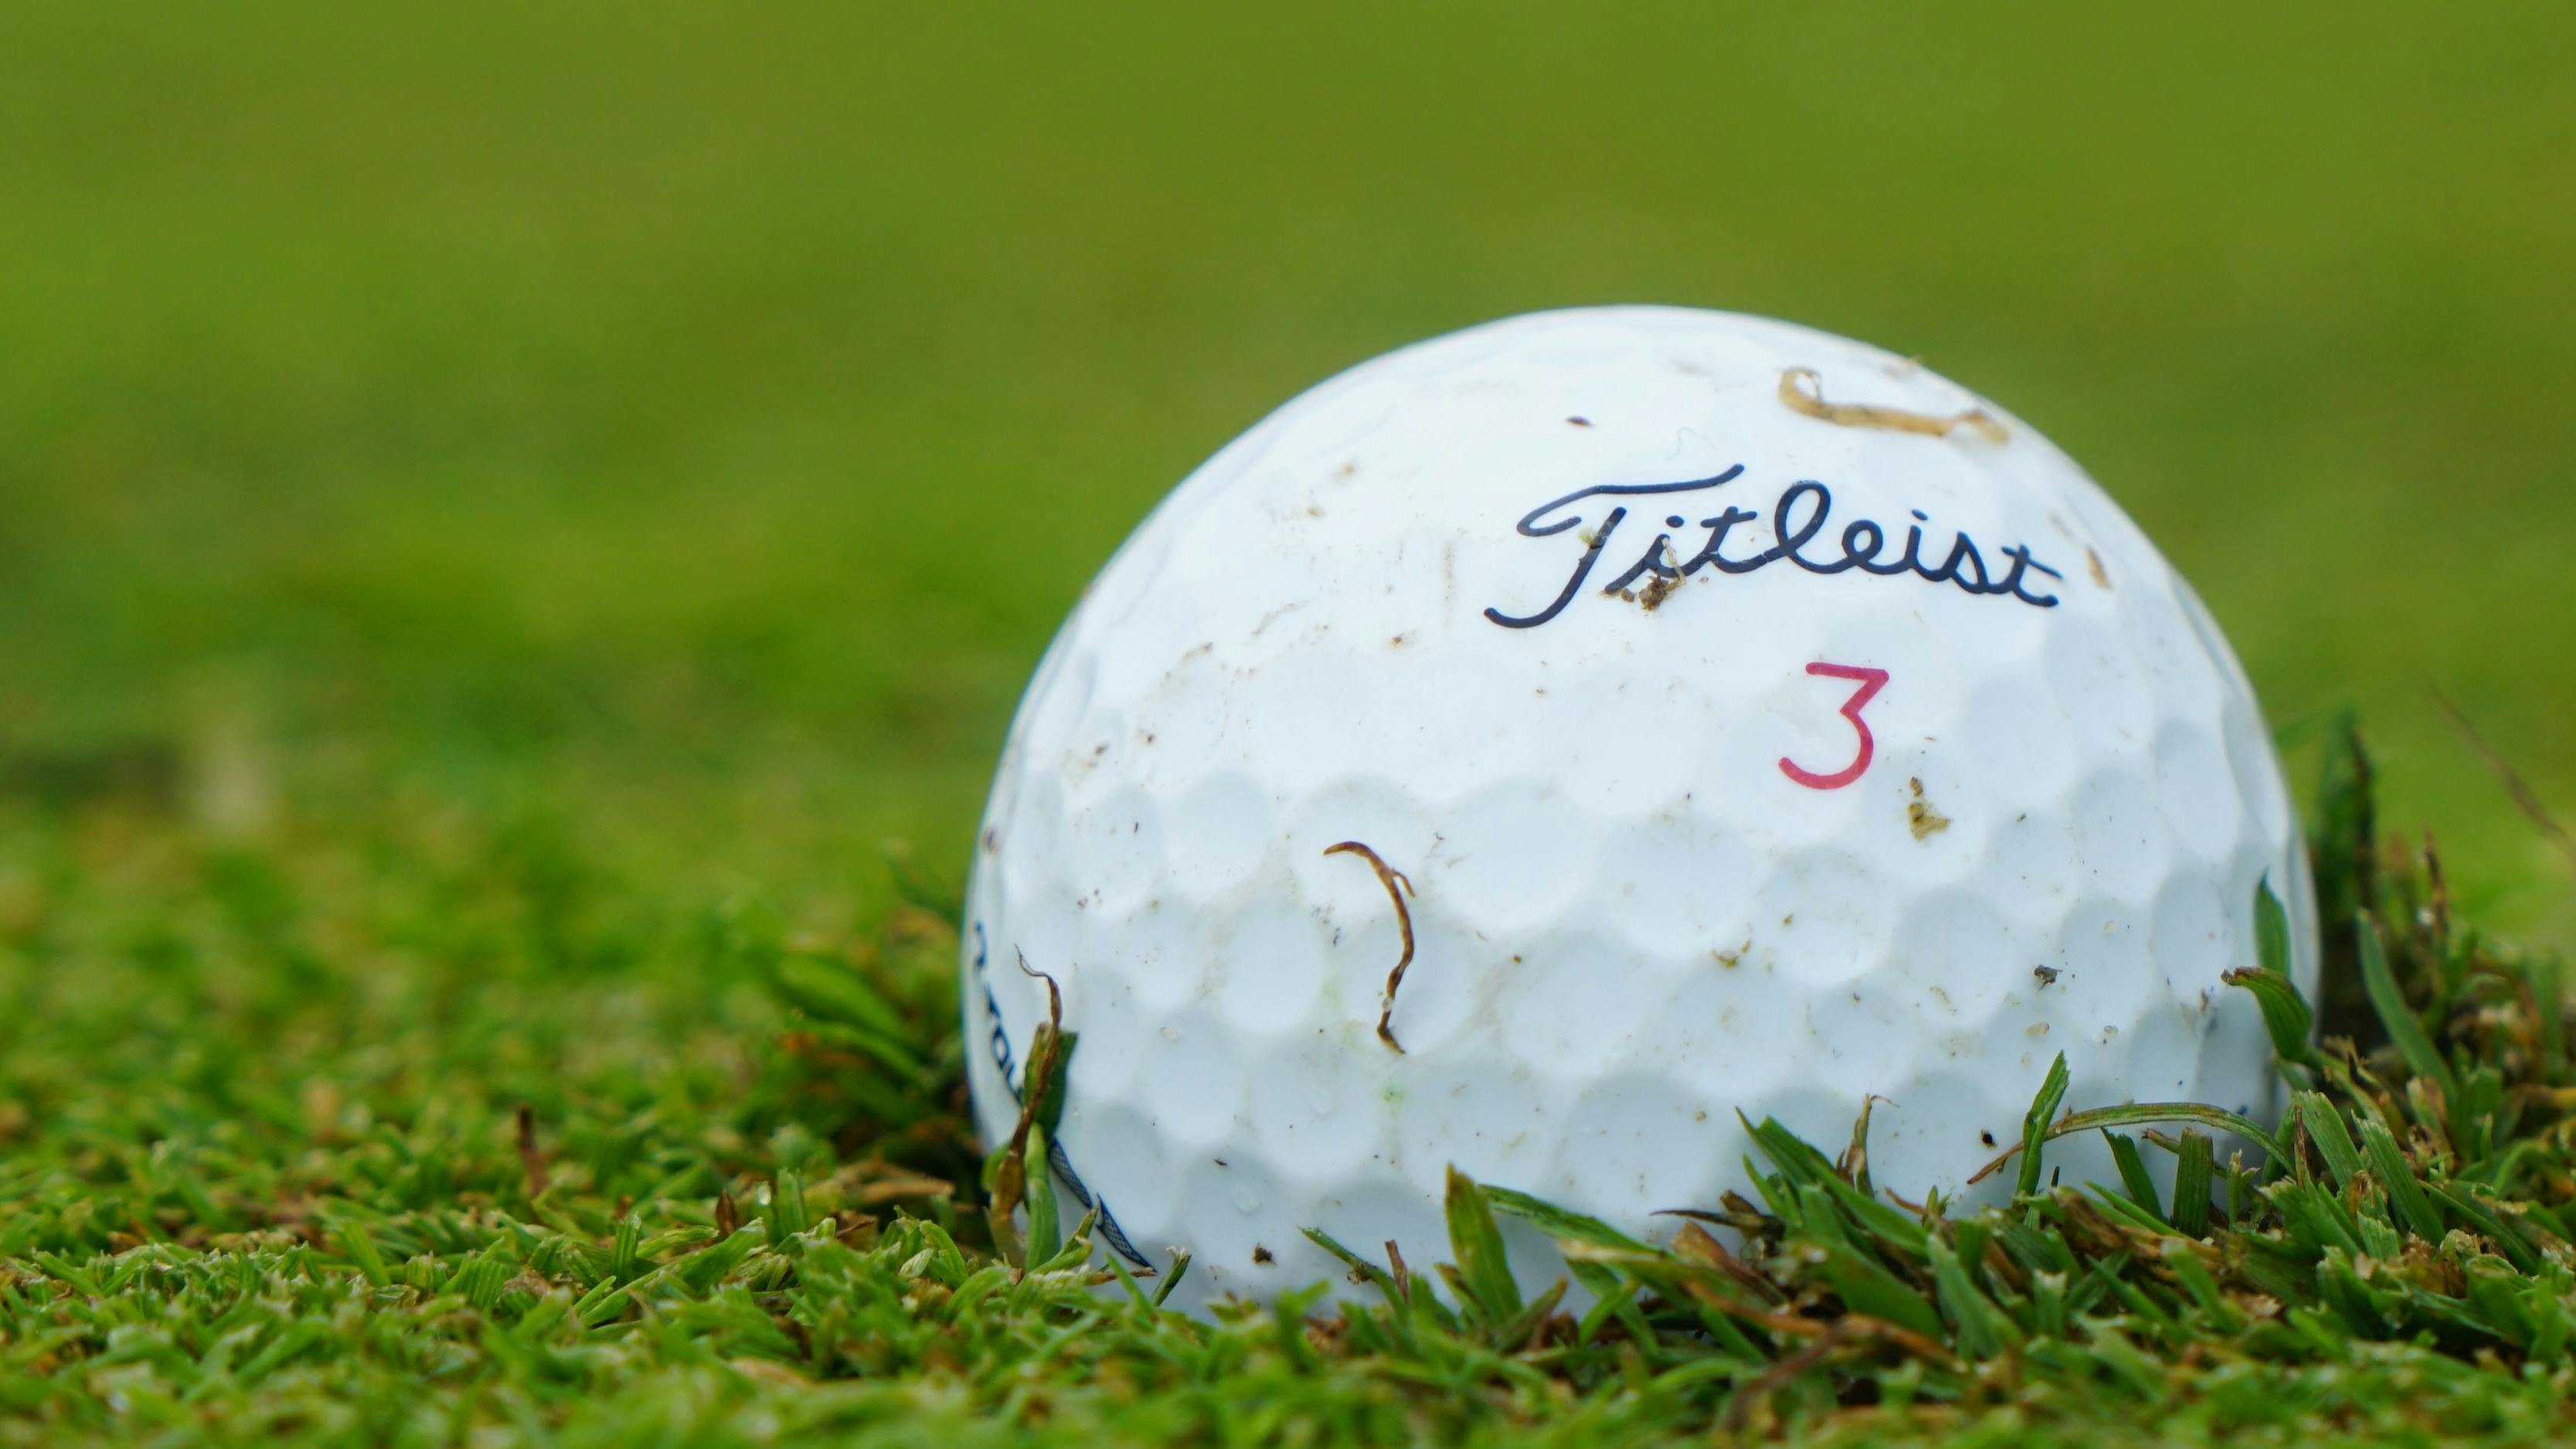 A Titleist Golf ball in the grass.